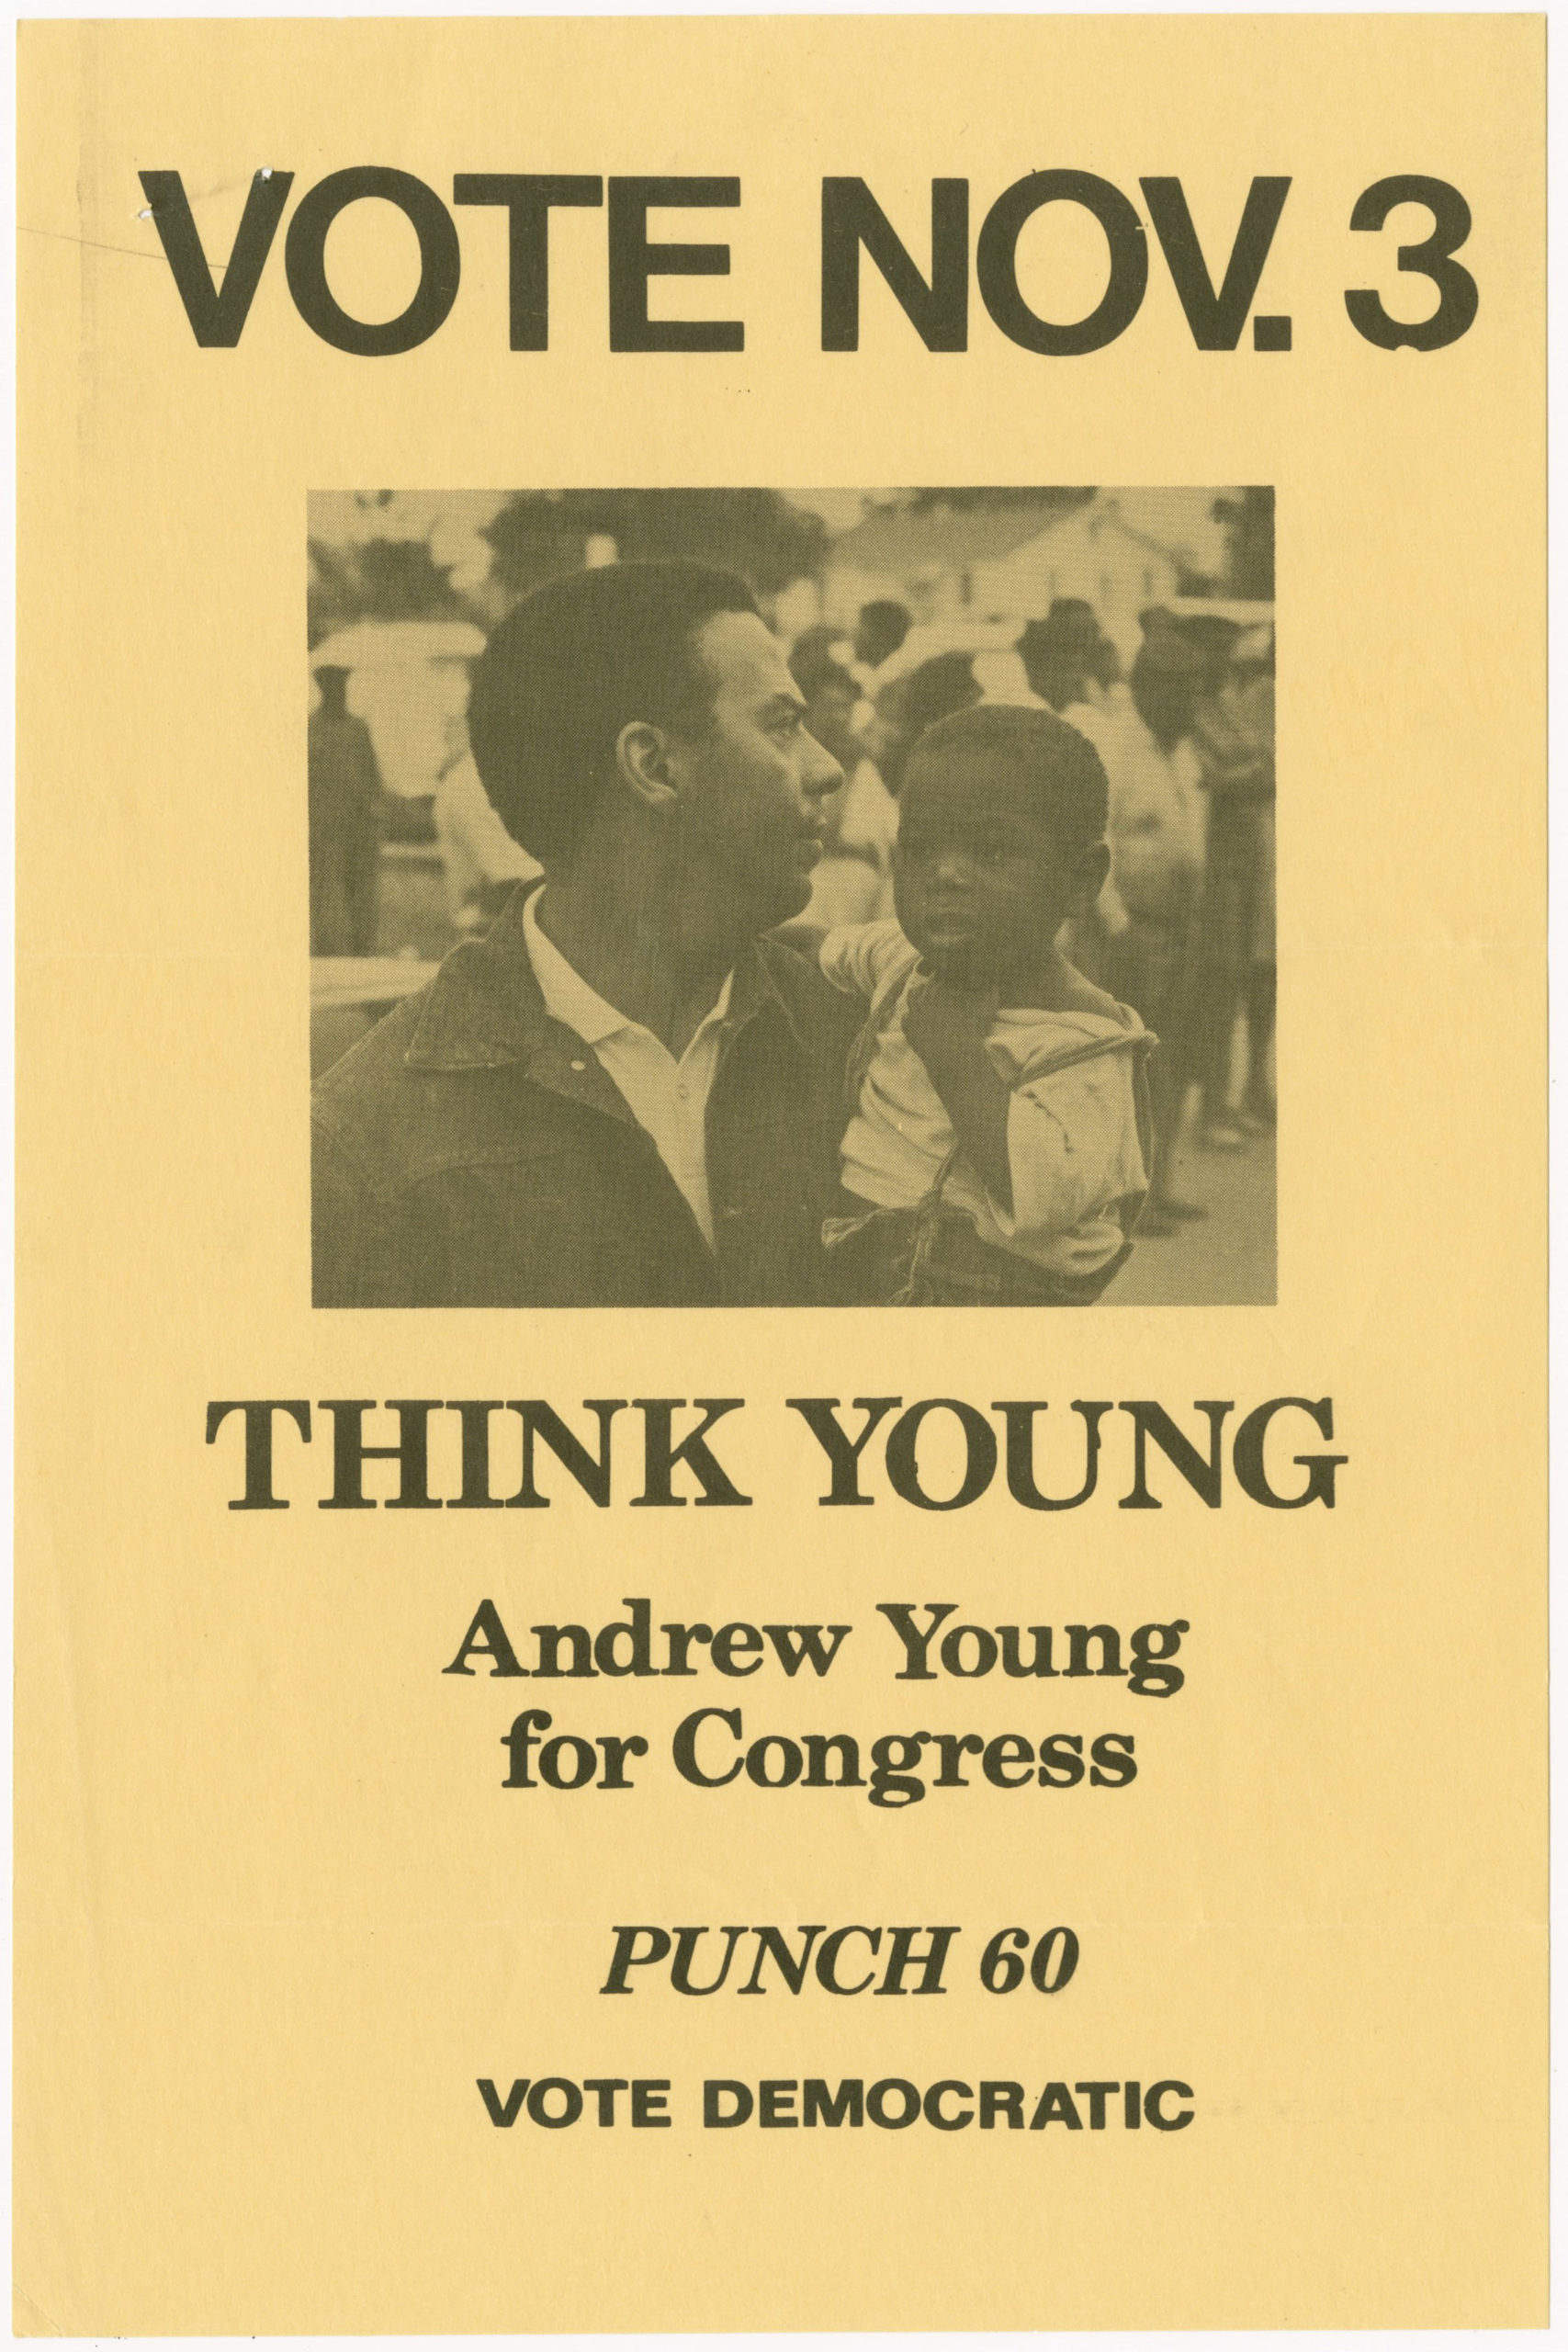 Andrew Young campaign flyer, circa 1970sJohn H. Calhoun